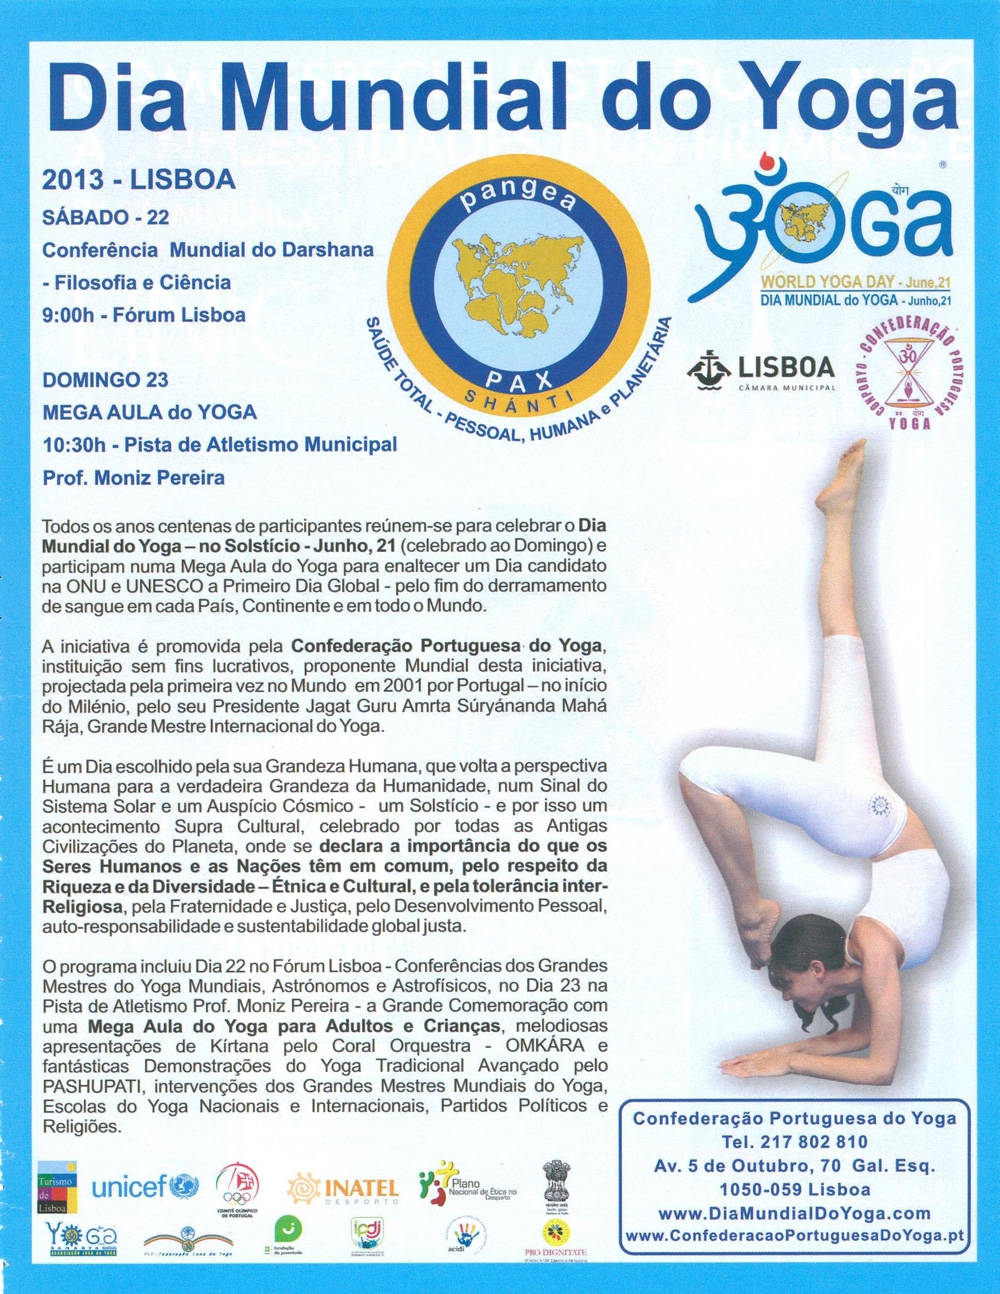 Imprensa - Dia Mundial do yoga 2013